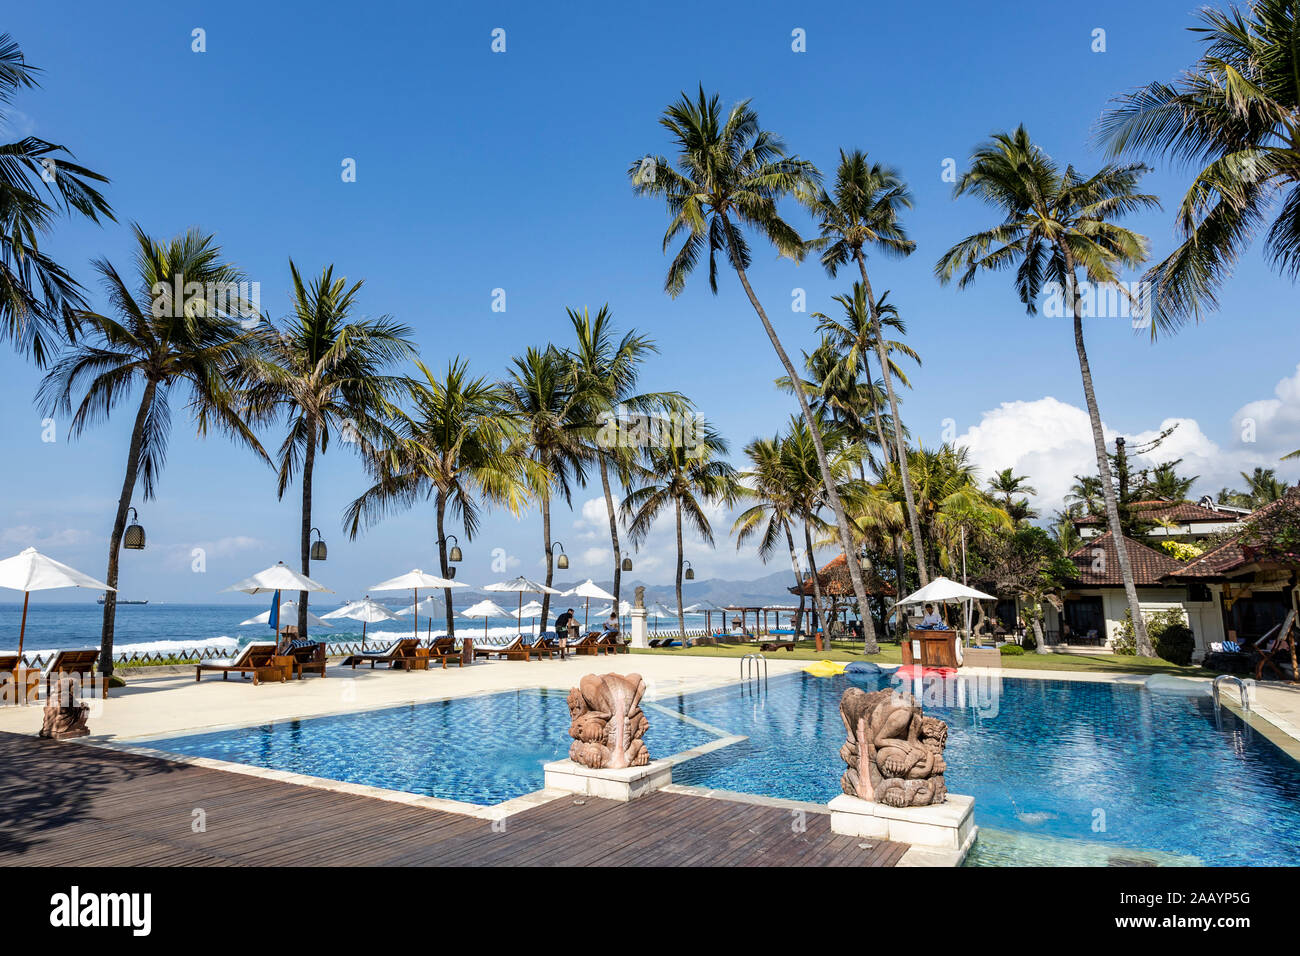 Hotel di lusso con palme e piscina, Candidasa o Candi Dasa, Bali Orientale, Bali, Indonesia, Asia sud-orientale, Asia Foto Stock